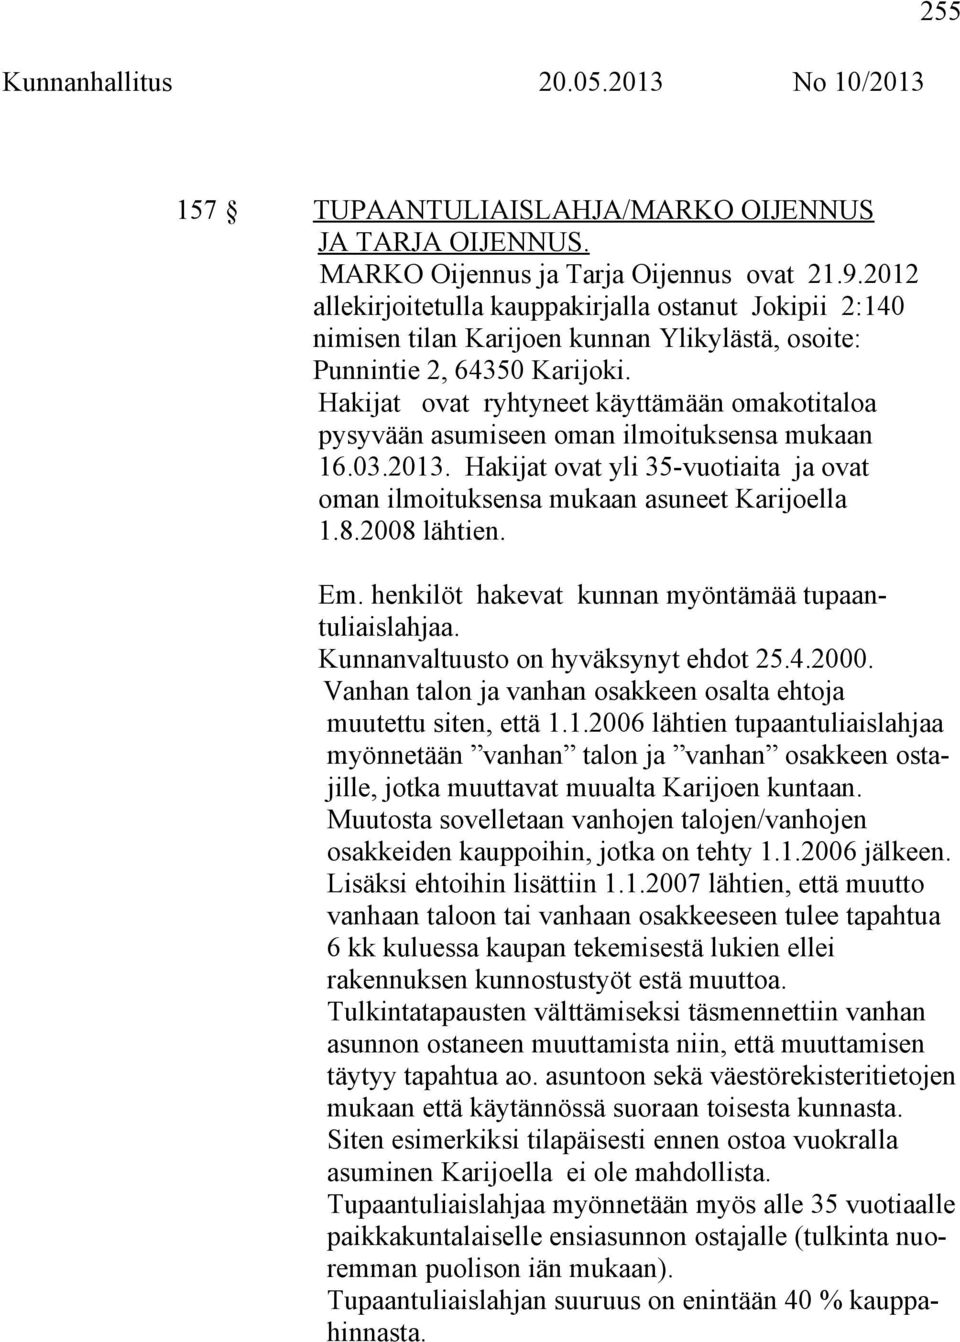 Hakijat ovat ryhtyneet käyttämään omakotitaloa pysyvään asumiseen oman ilmoituksensa mukaan 16.03.2013. Hakijat ovat yli 35-vuotiaita ja ovat oman ilmoituksensa mukaan asuneet Karijoella 1.8.